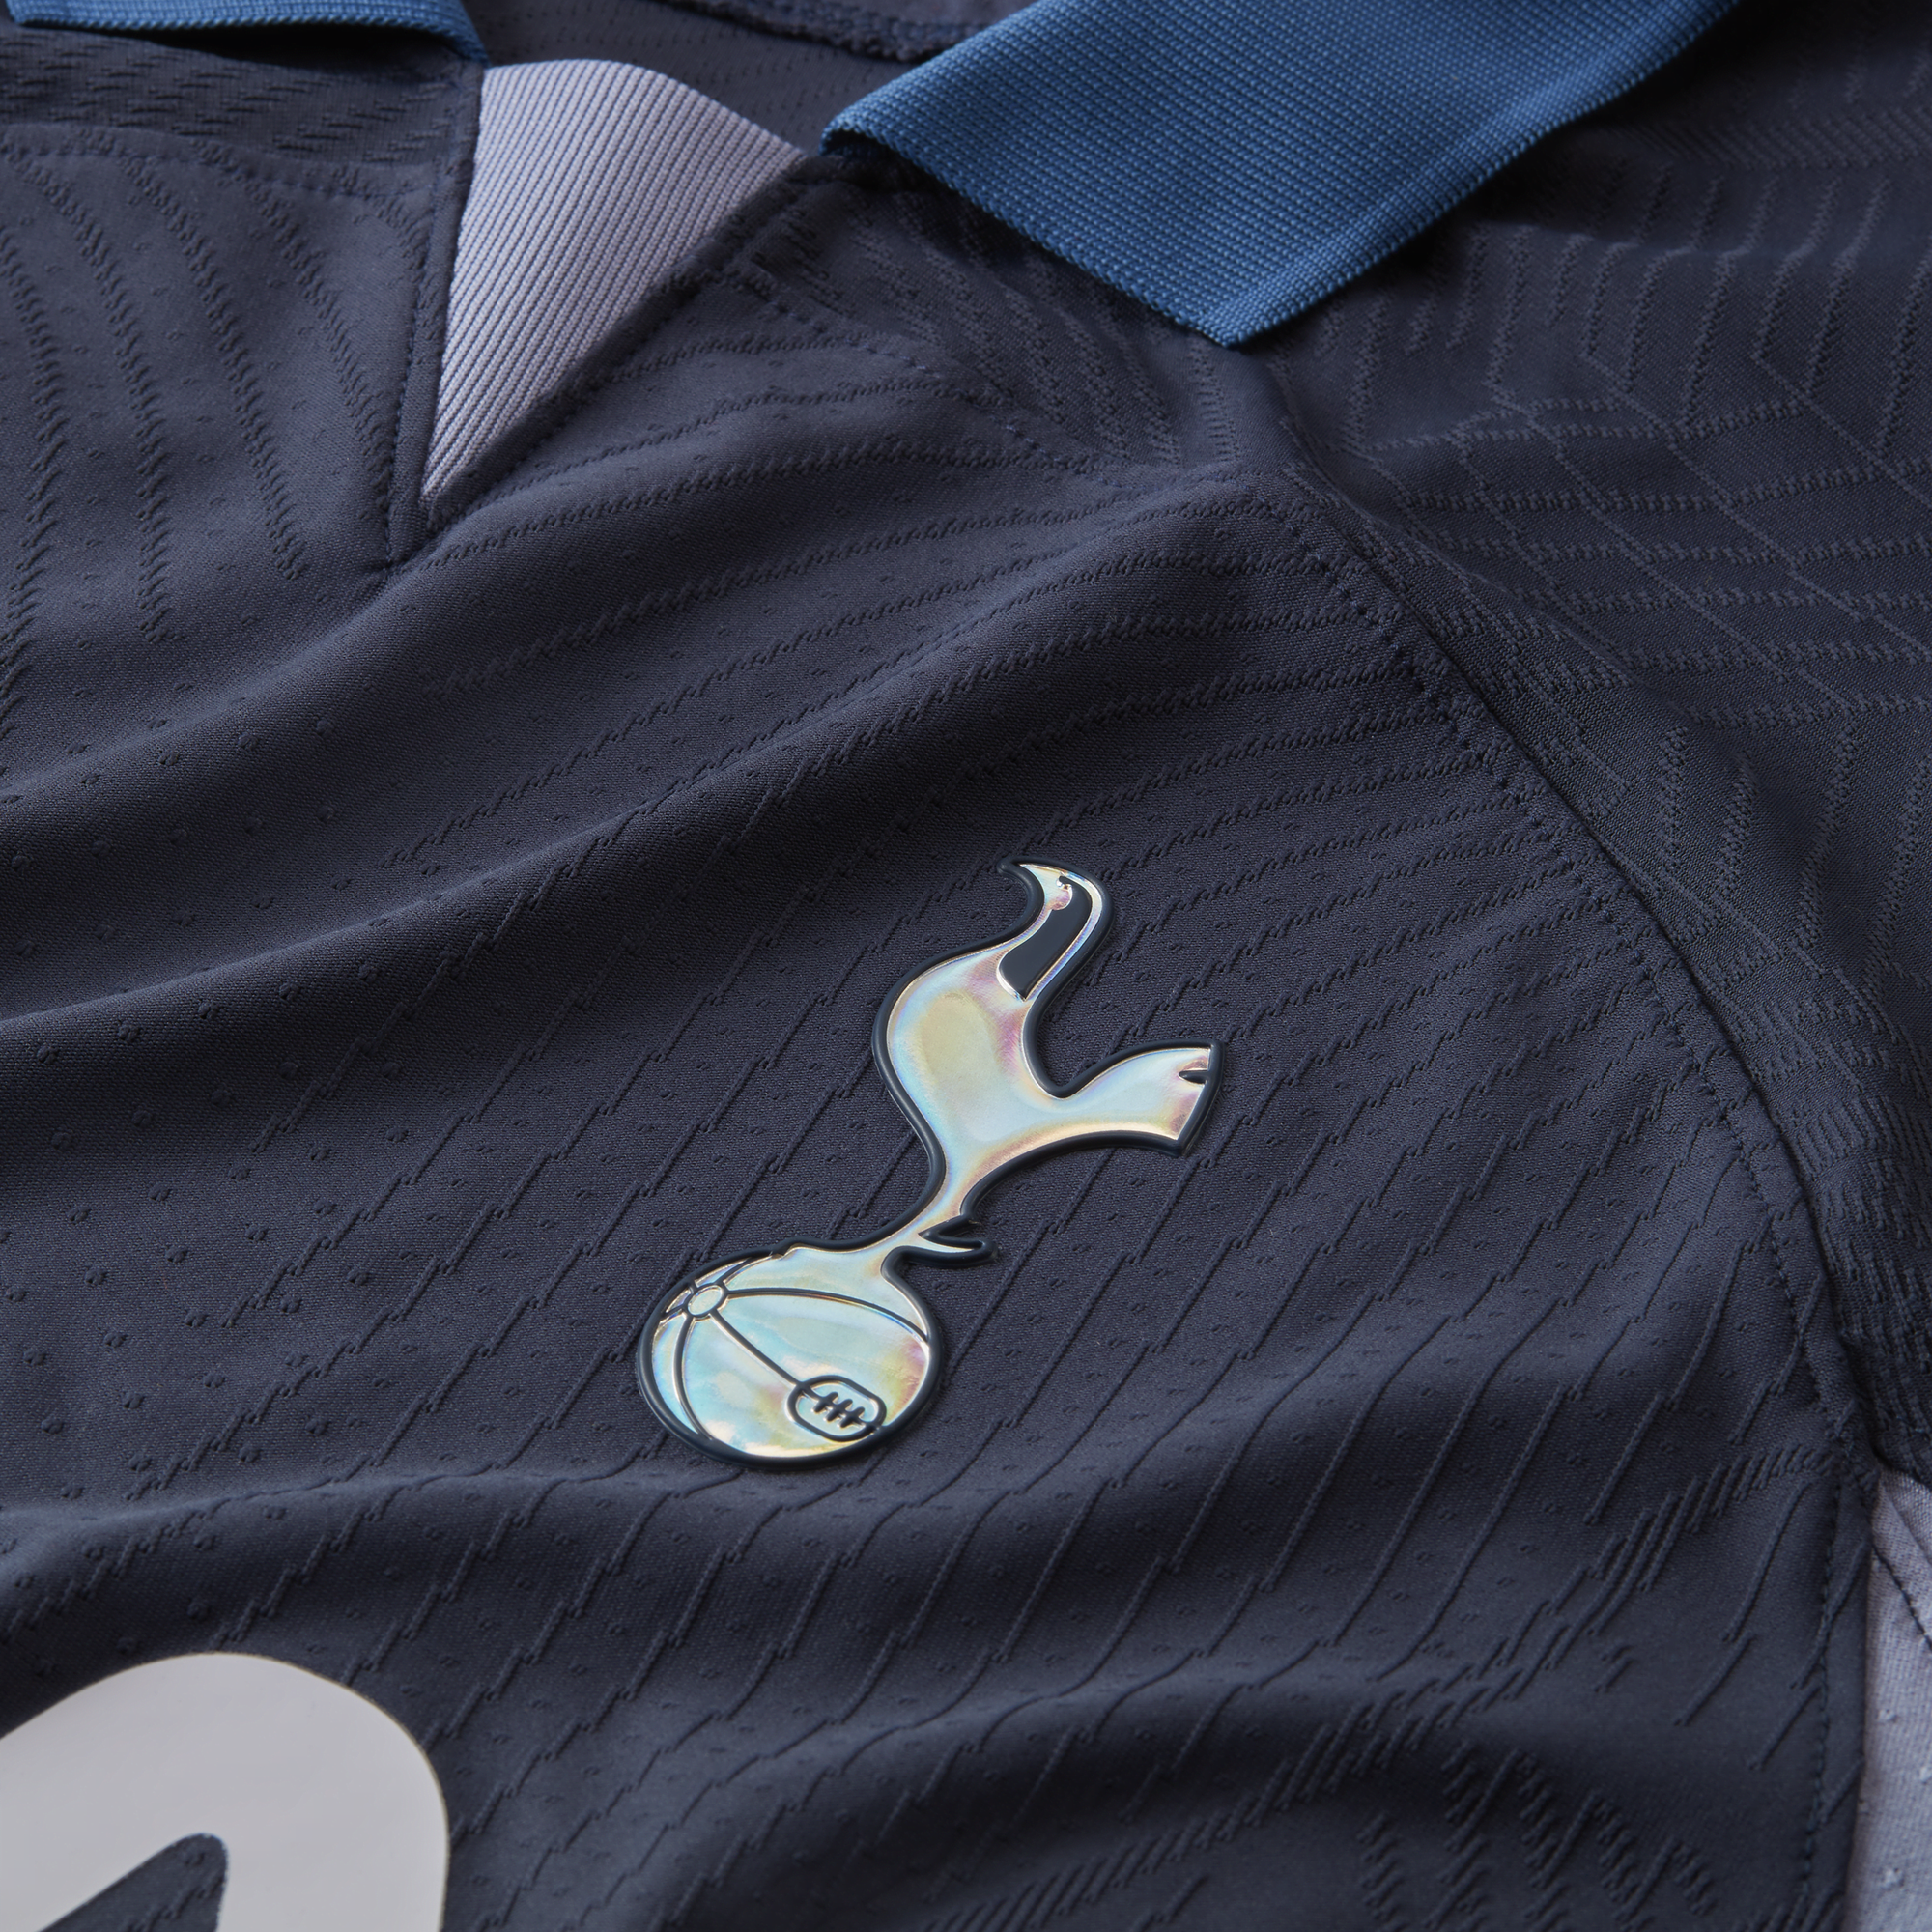 Nike Tottenham Dri-Fit ADV Match Home Trikot 2022-2023 XL / Bentancur 30 (Premier League) +CHF* 30.00 / + CHF* 30.00